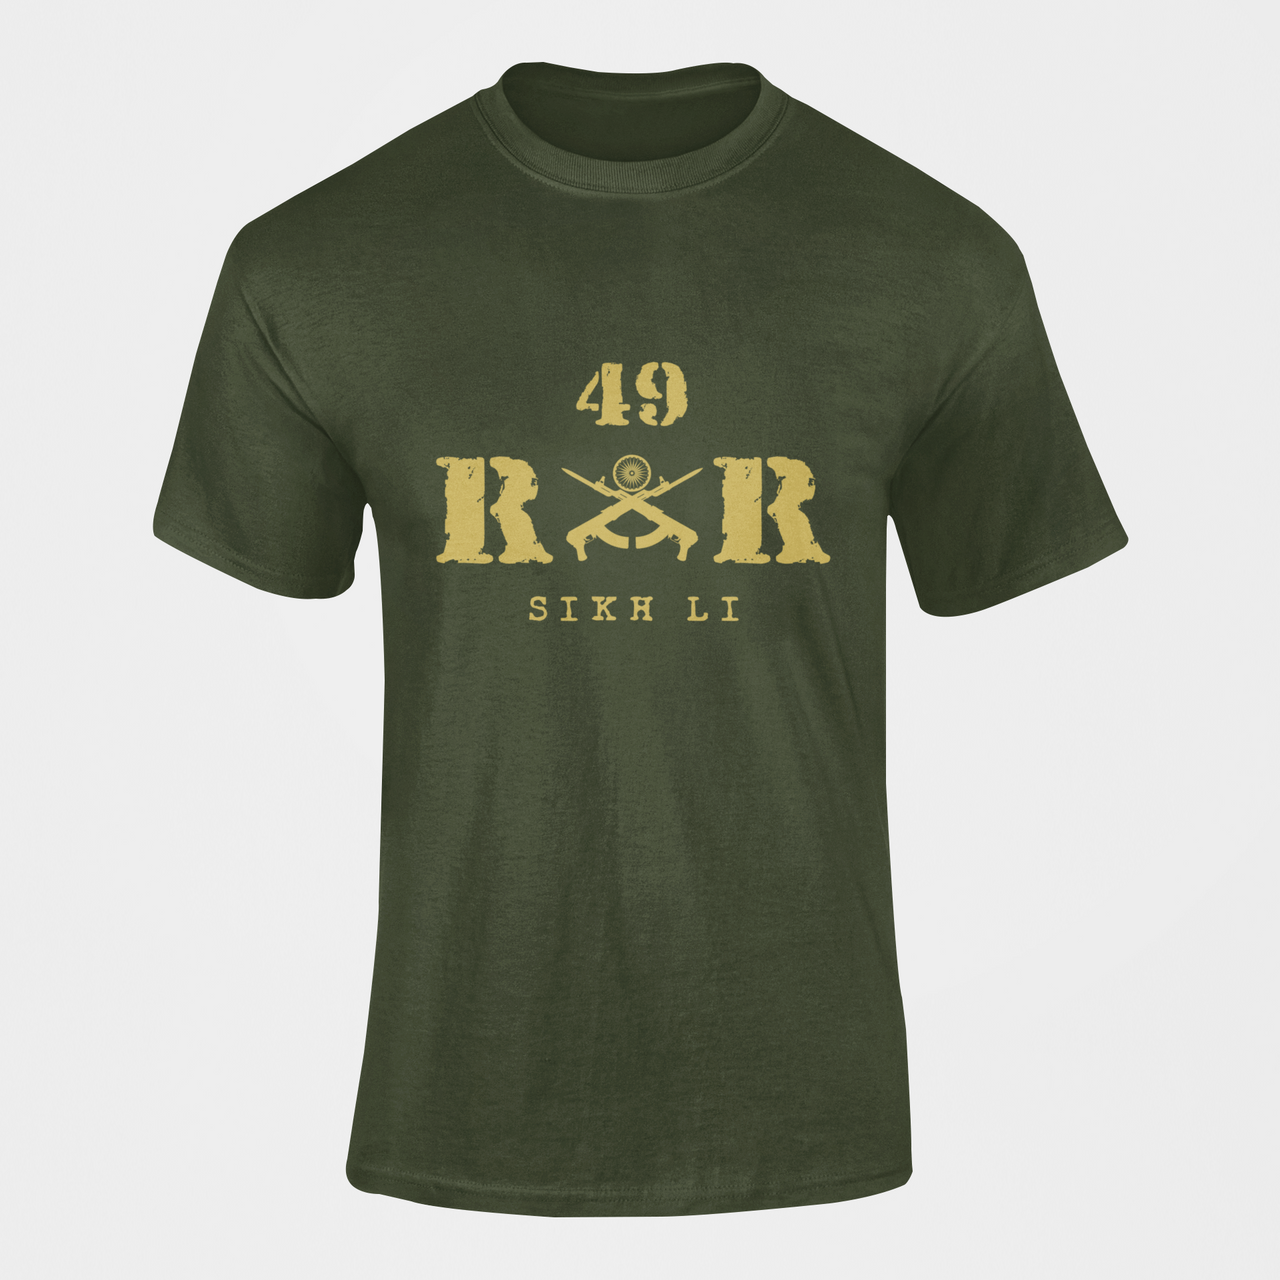 Rashtriya Rifles T-shirt - 49 RR Sikh Li (Men)